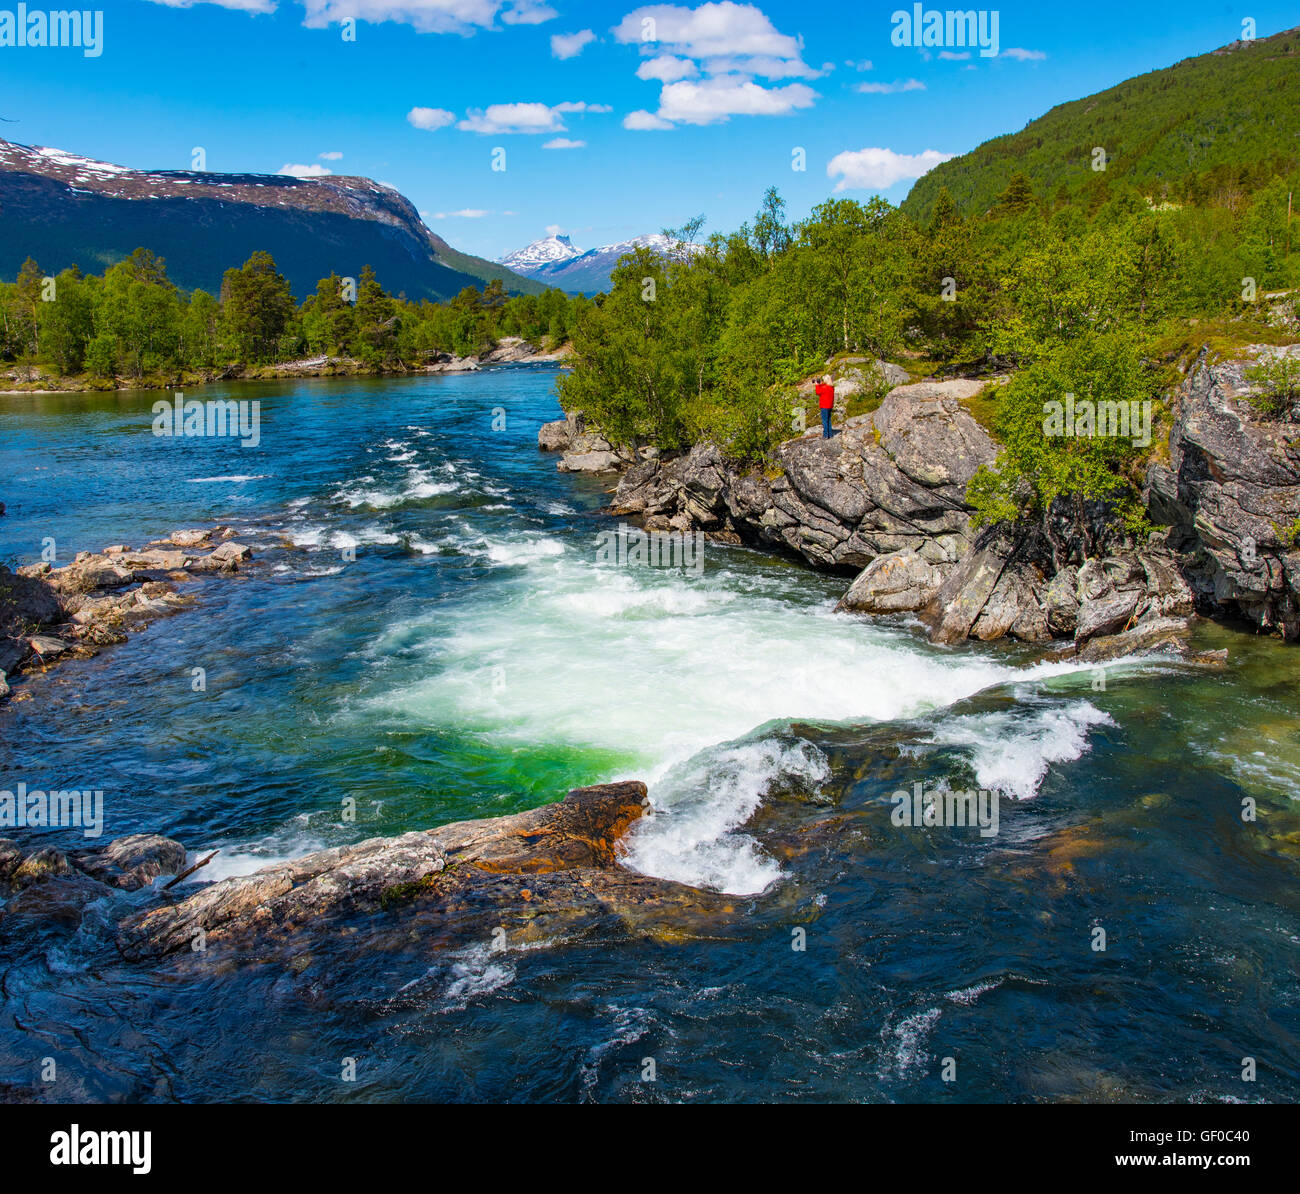 Cascades de la rivière Rauma, vallée de Romsdalen, More og Romsdal, Norvège, Scandinavie, Européenne Banque D'Images